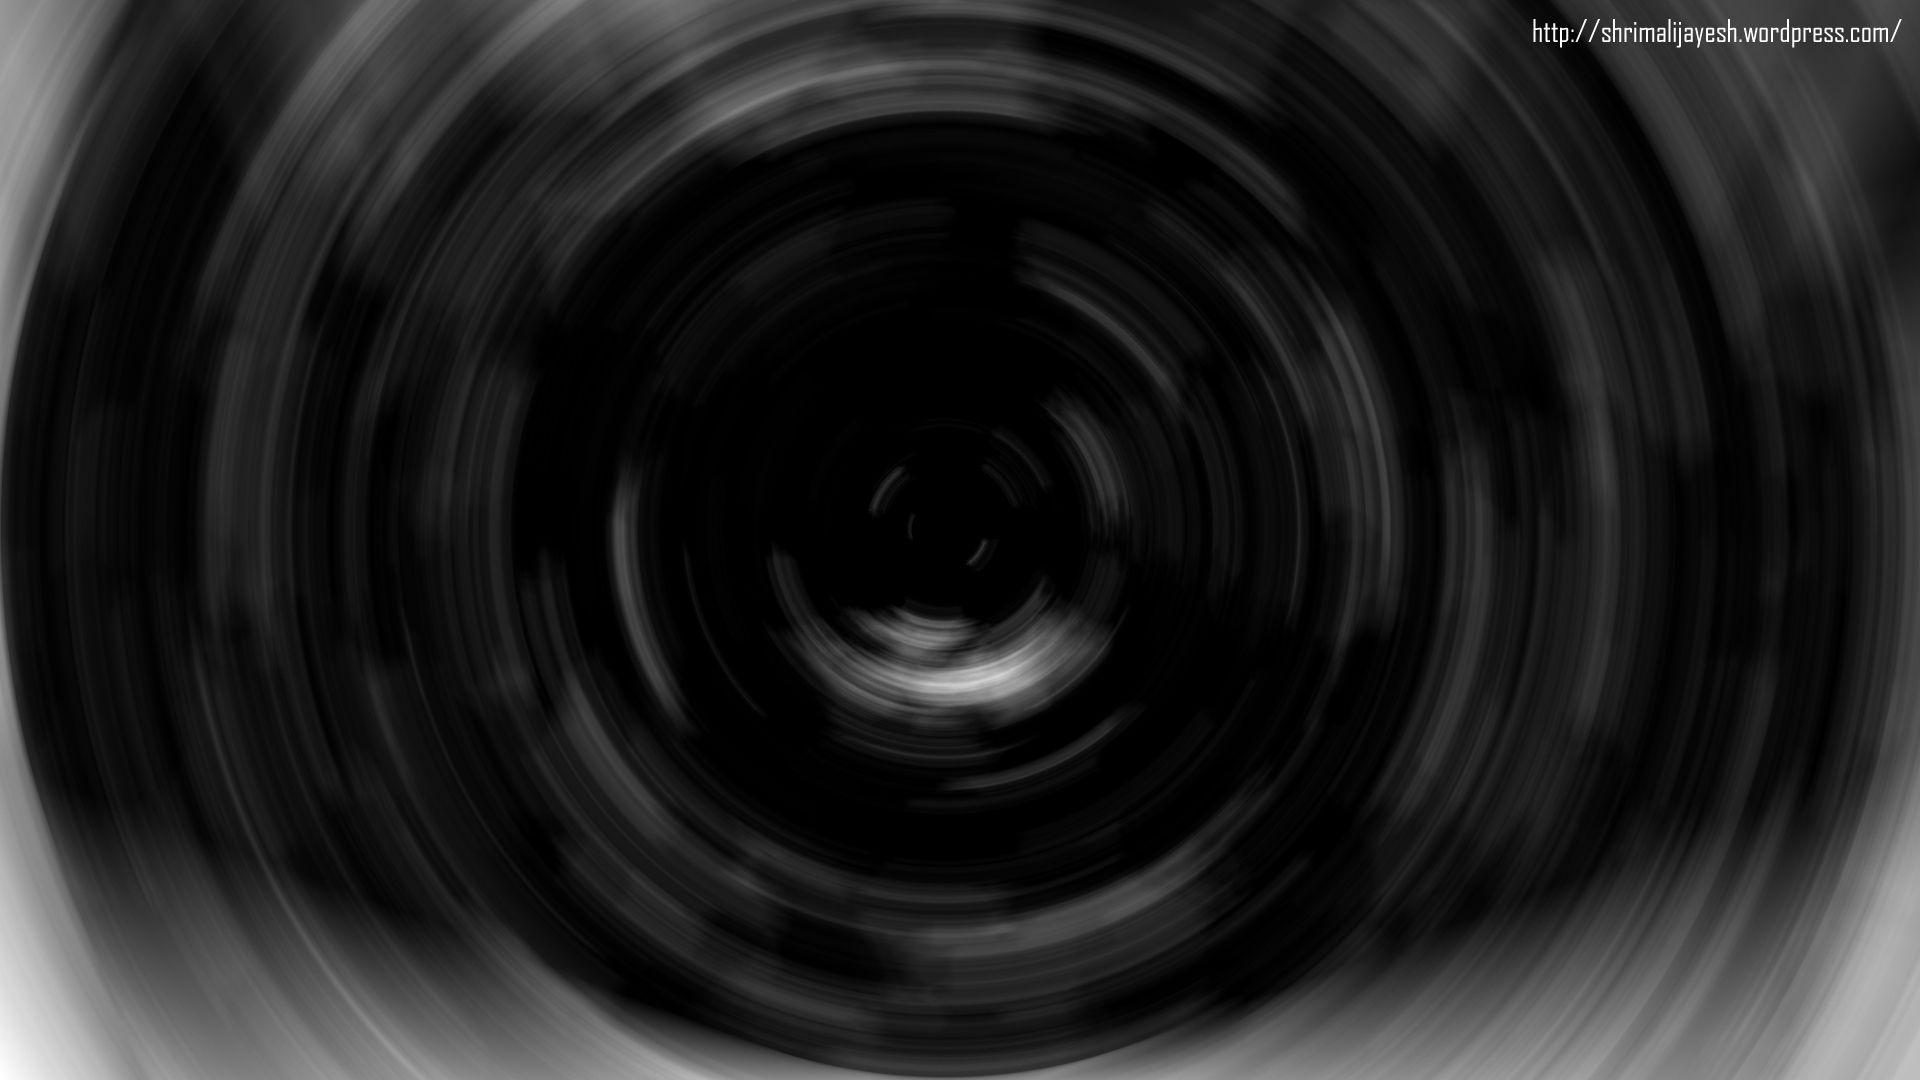 1920x1080 hình nền vòng tròn đen